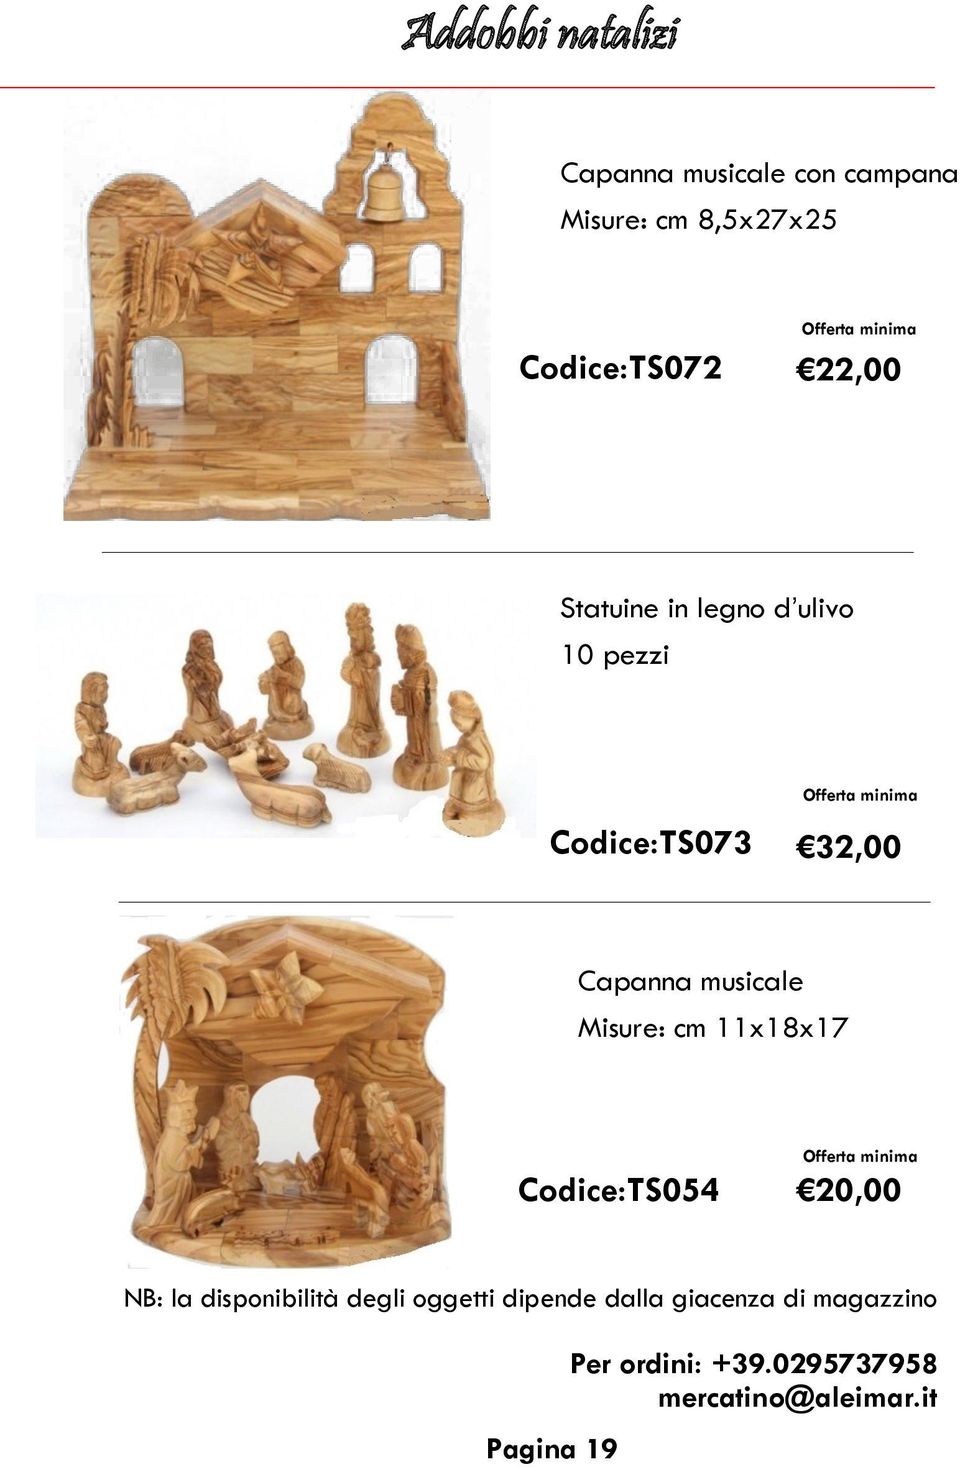 legno d ulivo 10 pezzi Codice:TS073 32,00 Capanna